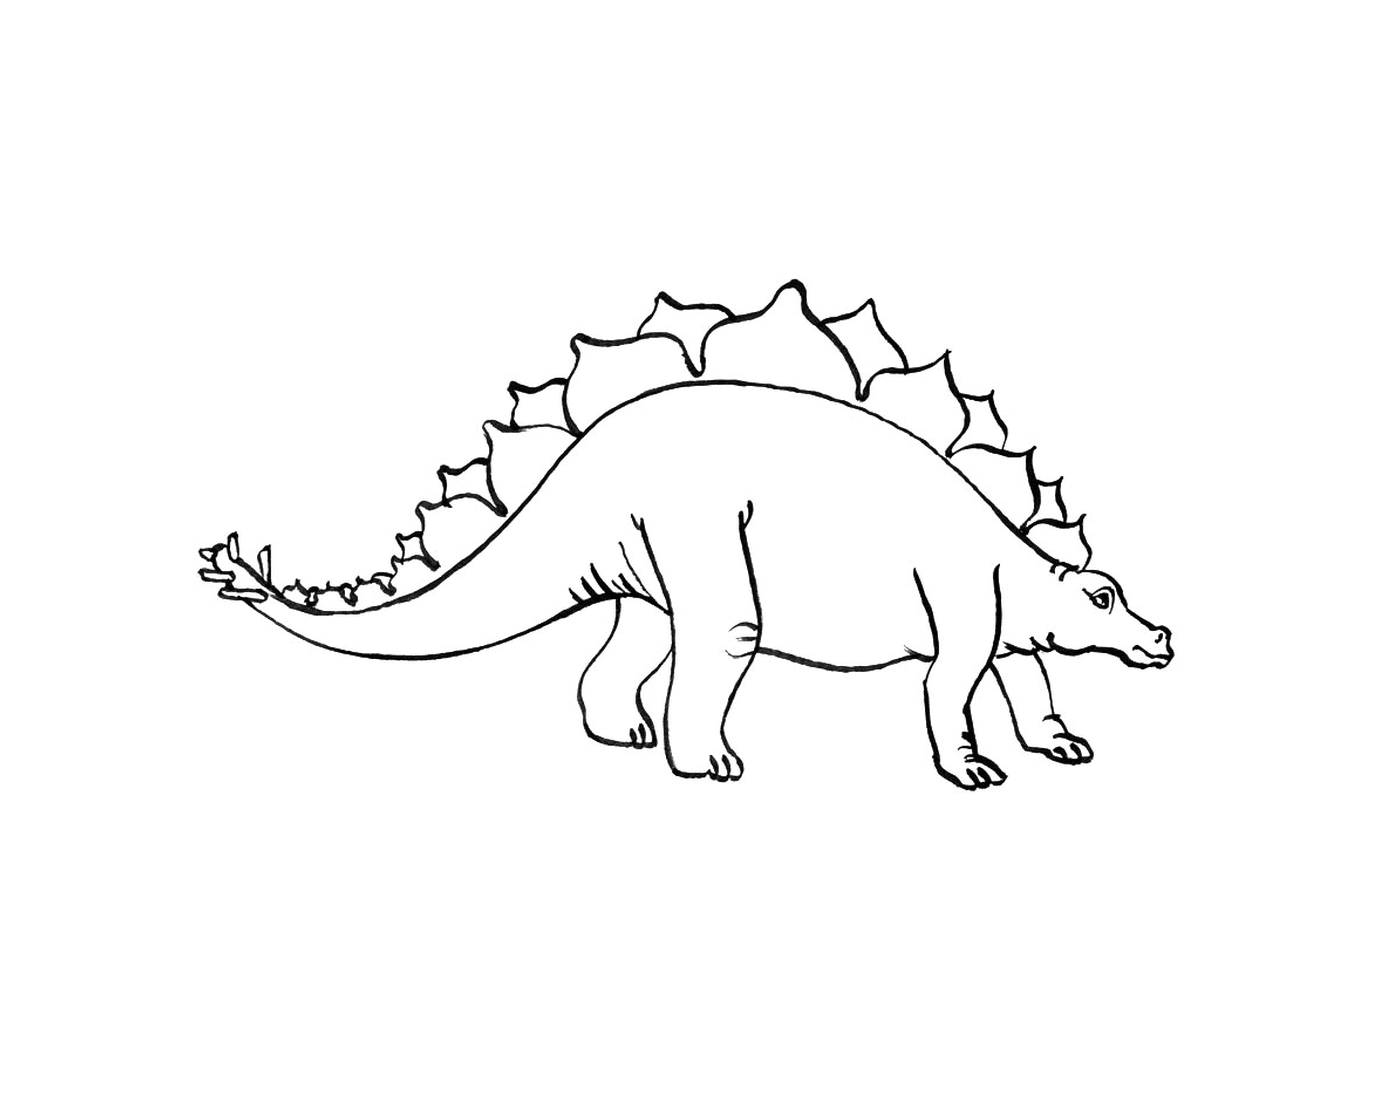  Стегозавр стоит на черно-белом рисунке 